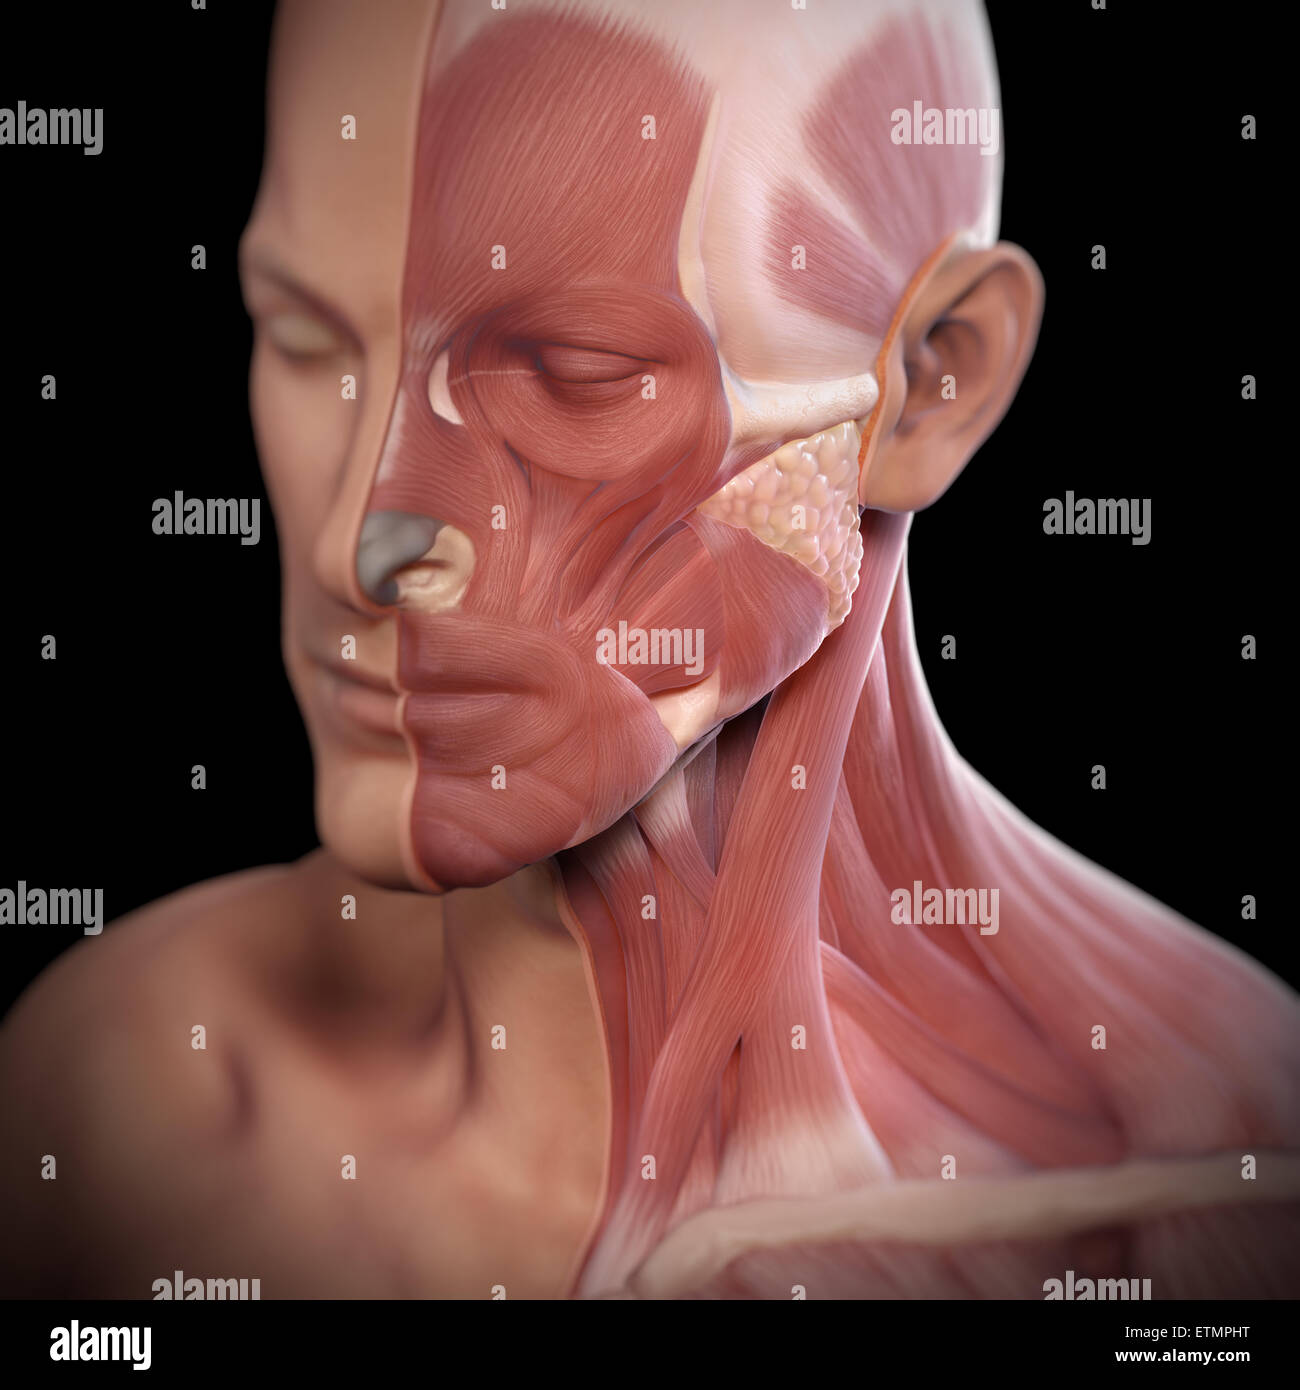 Imagen conceptual de la cara con los músculos expuestos en un lado. Foto de stock